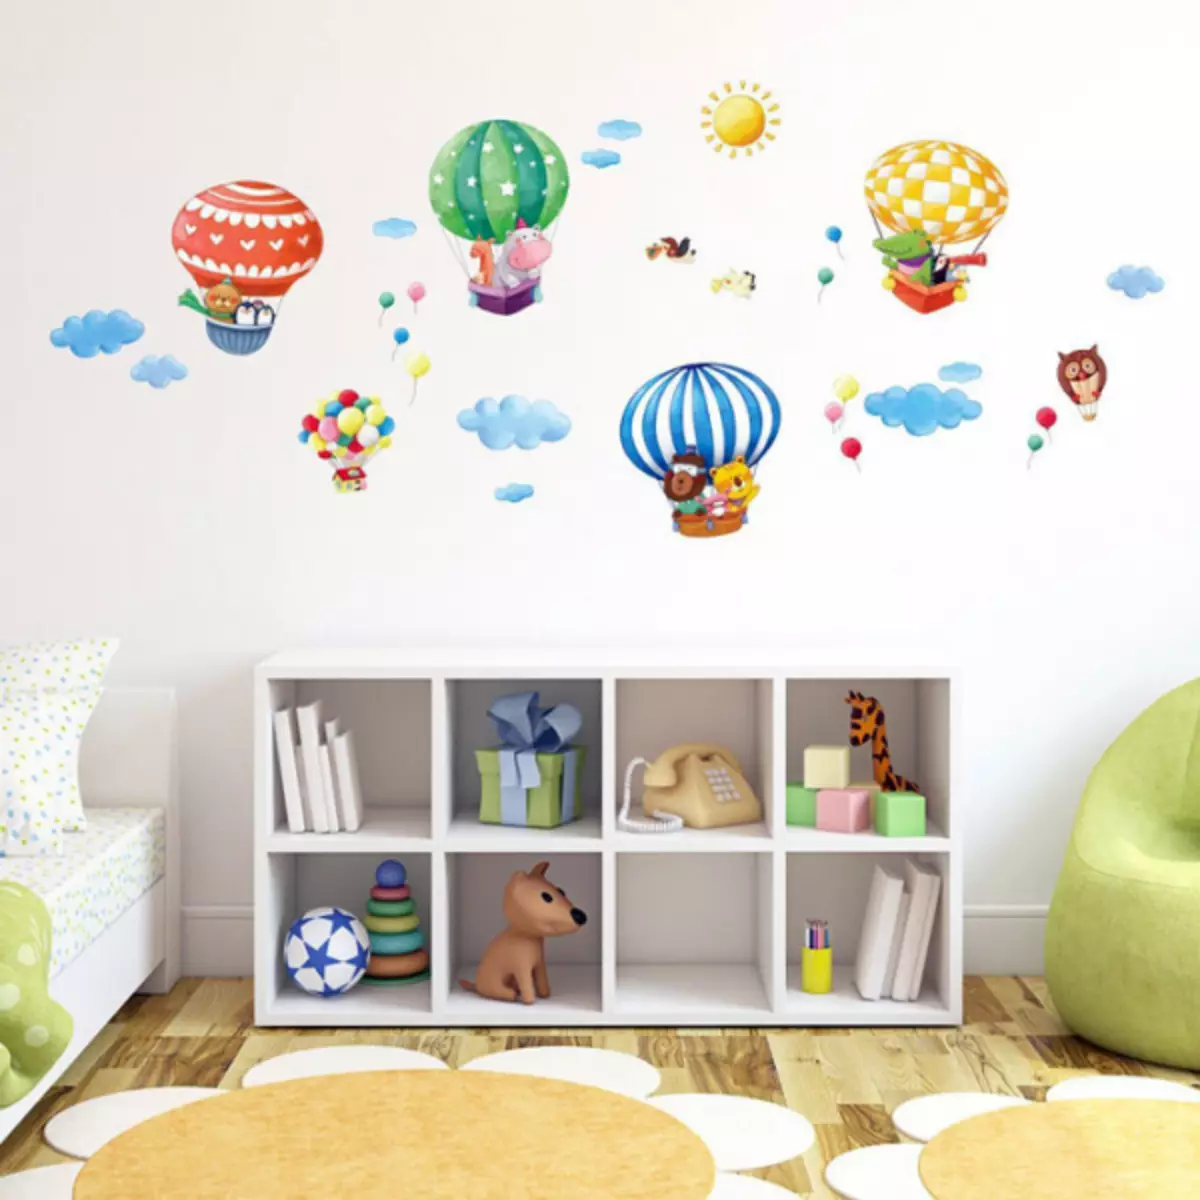 Ballons in der Dekoration des Kinderzimmers für Freudekinder